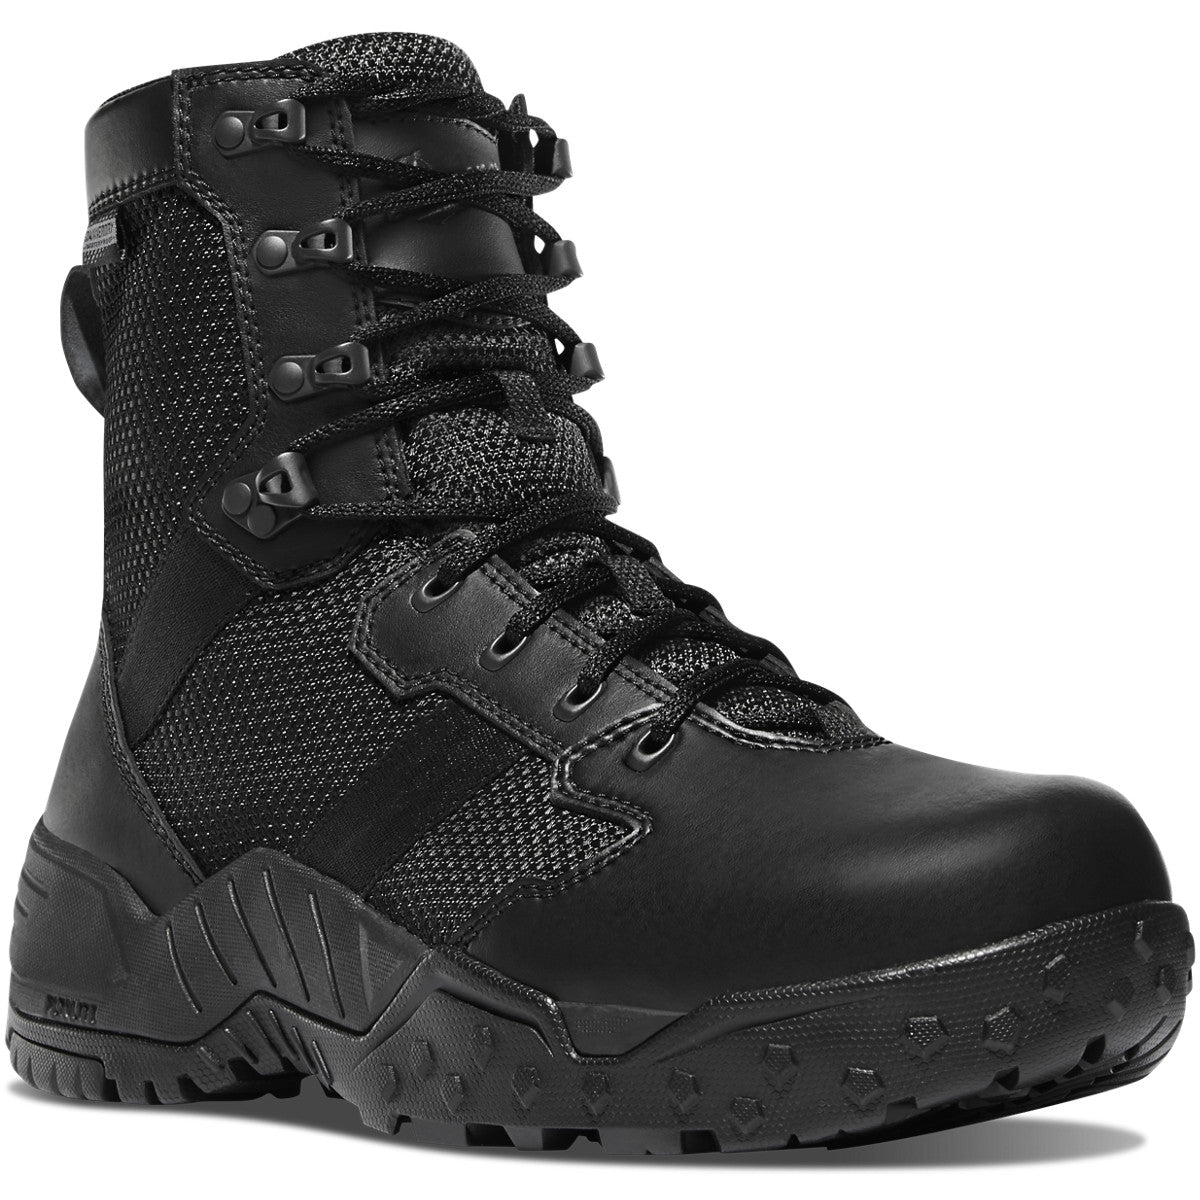 Danner Men's Scorch 8" Waterproof Side Zip Duty Boot - Black - 25733 6 / Medium / Black - Overlook Boots